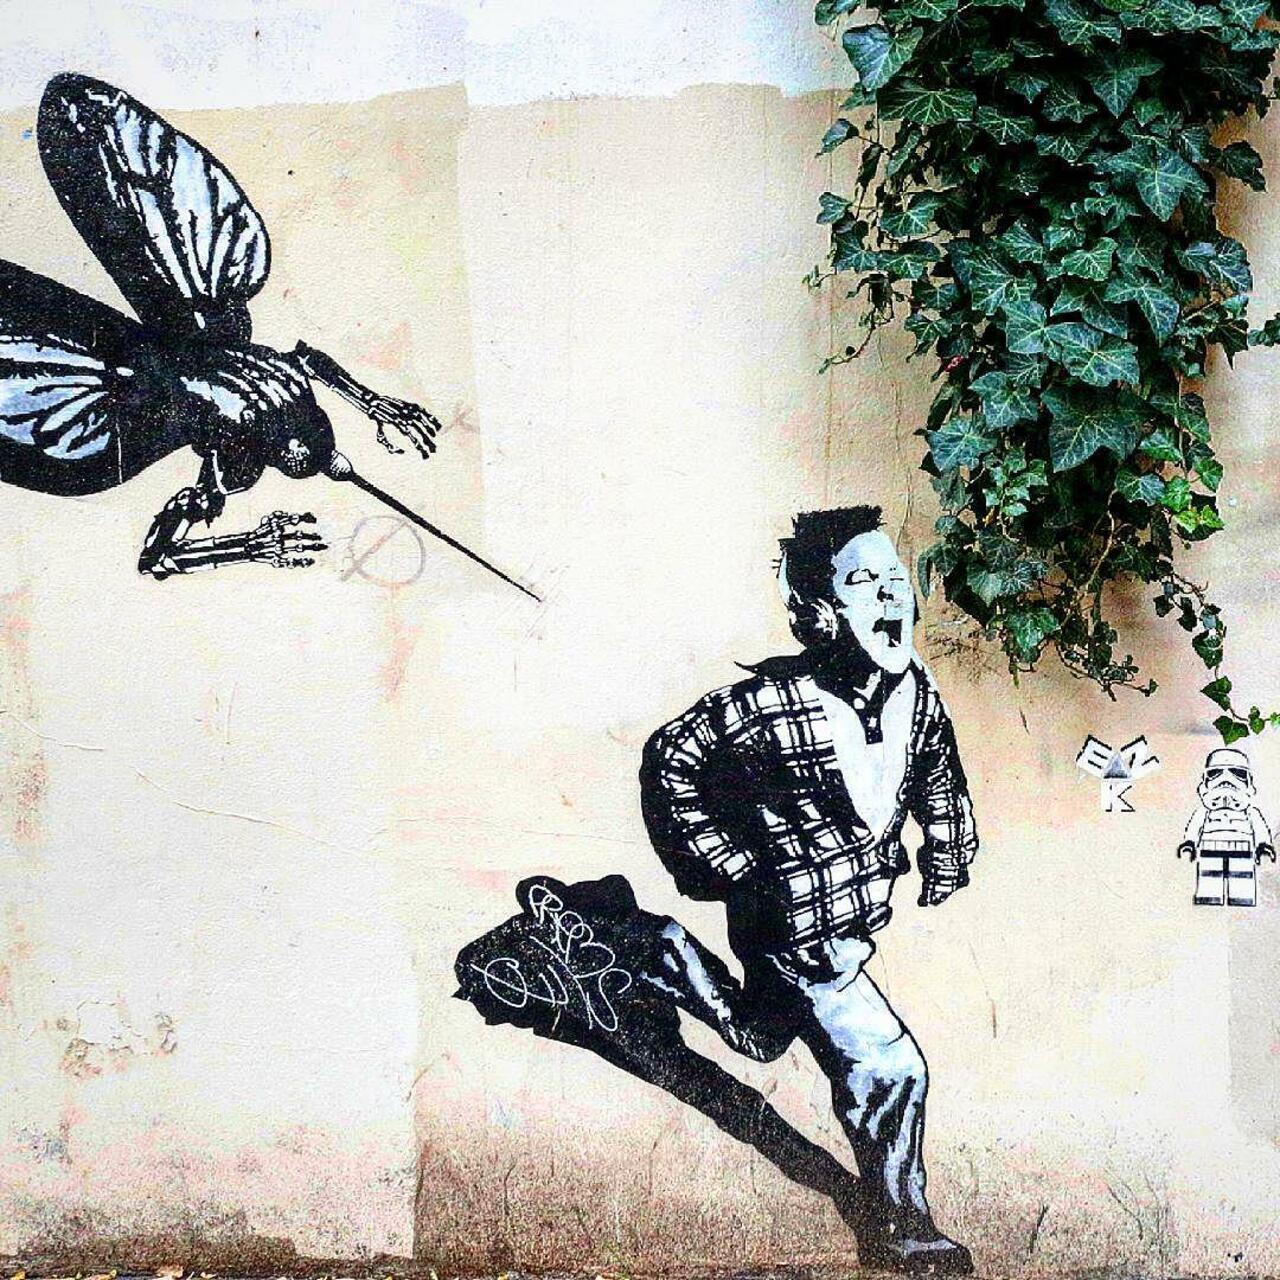 RT @circumjacent_fr: #Paris #graffiti photo by @jpoesse http://ift.tt/1GnkuuI #StreetArt https://t.co/Bs8Vm8LVyR